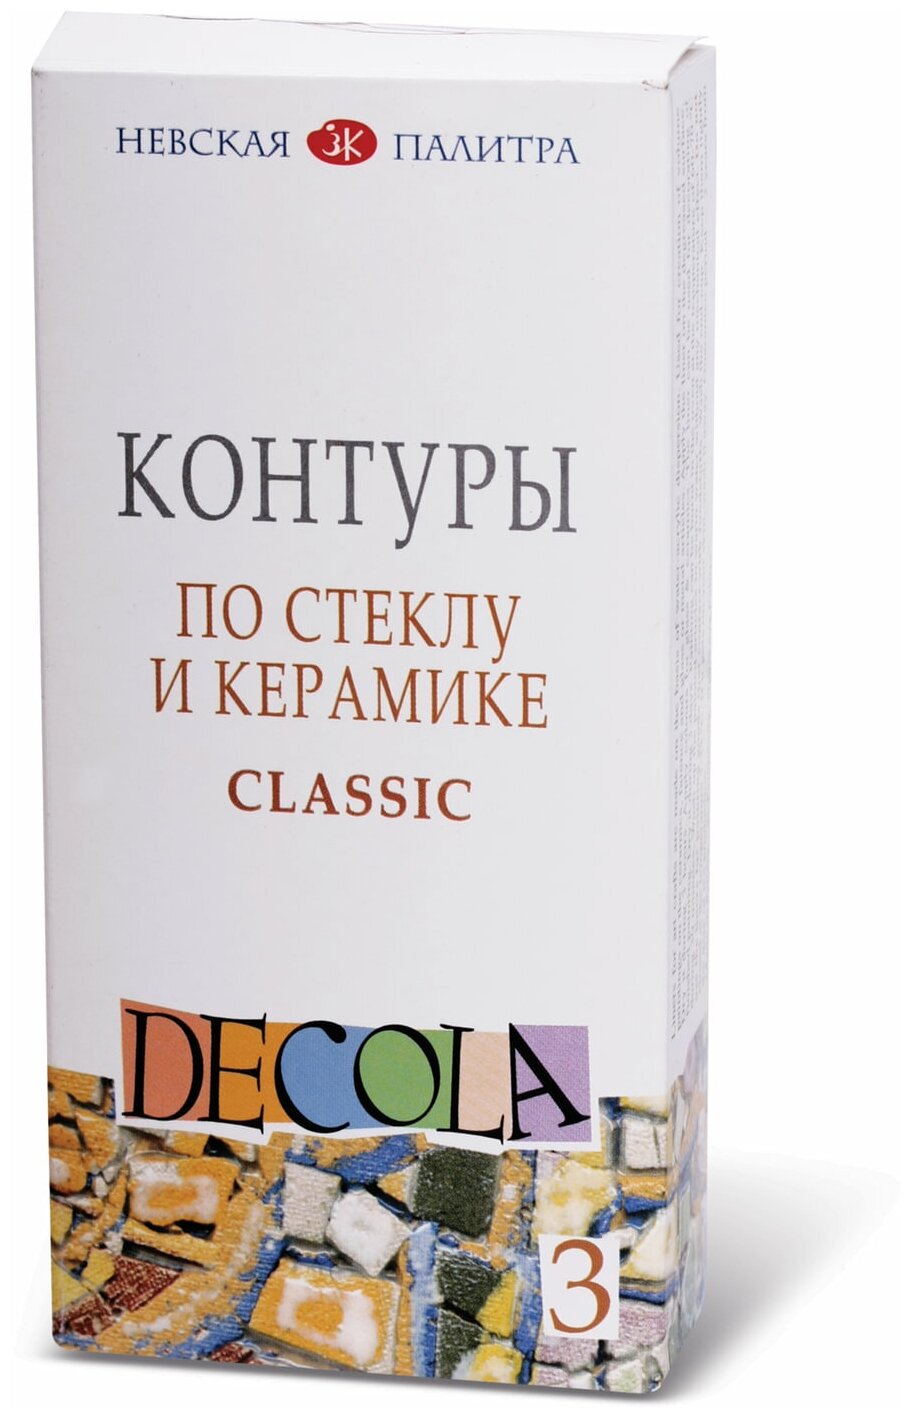 DECOLA / Контуры по стеклу и керамике classic, 3 цвета по 18 мл, ЗХК Невская палитра